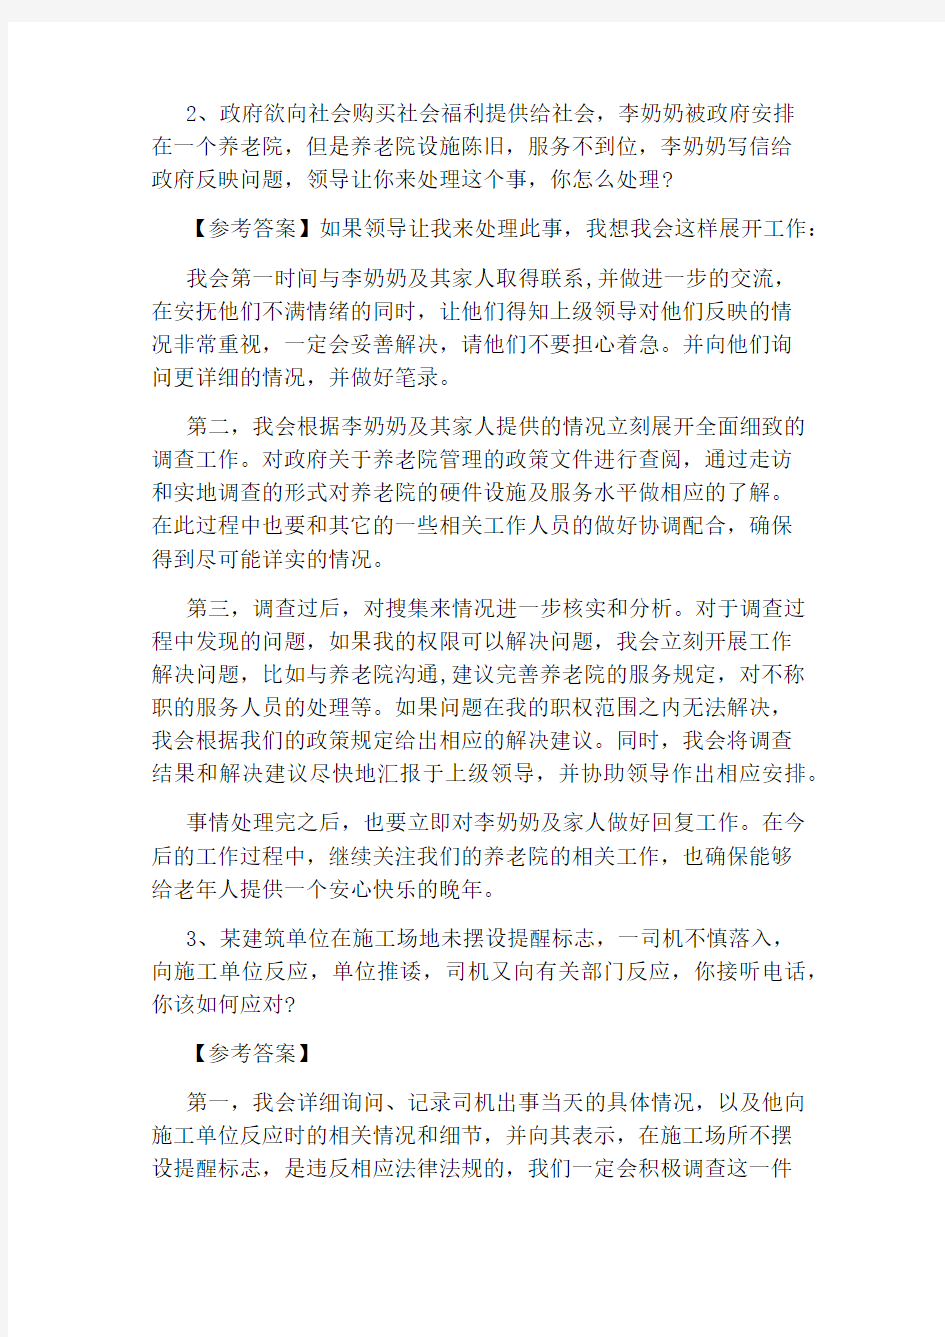 2020年4月22日江苏省公务员考试面试真题